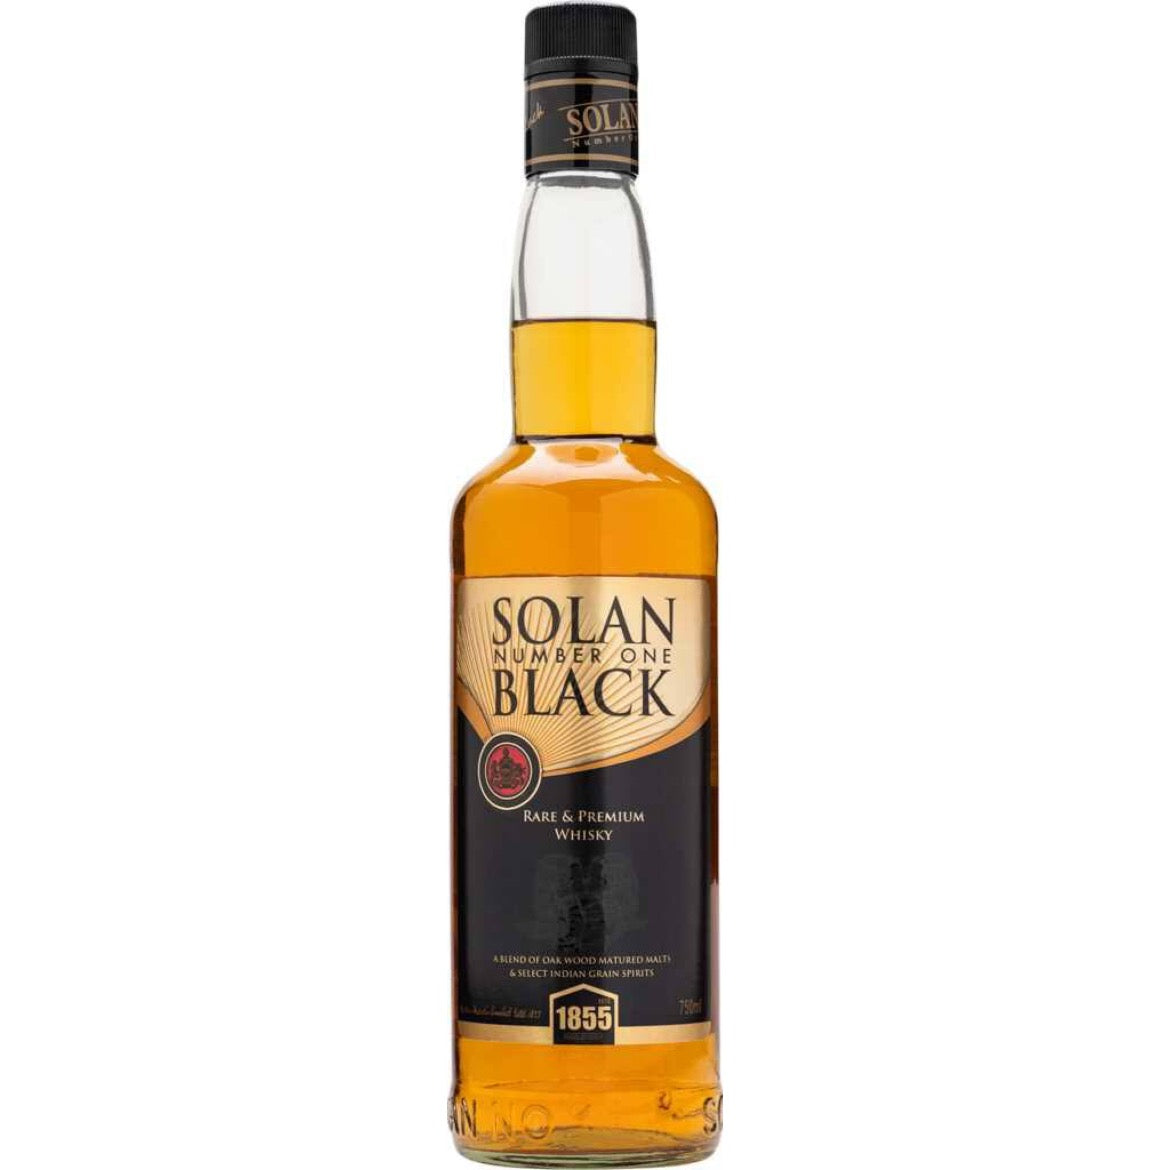 Solan No.1 Black Rare Premium